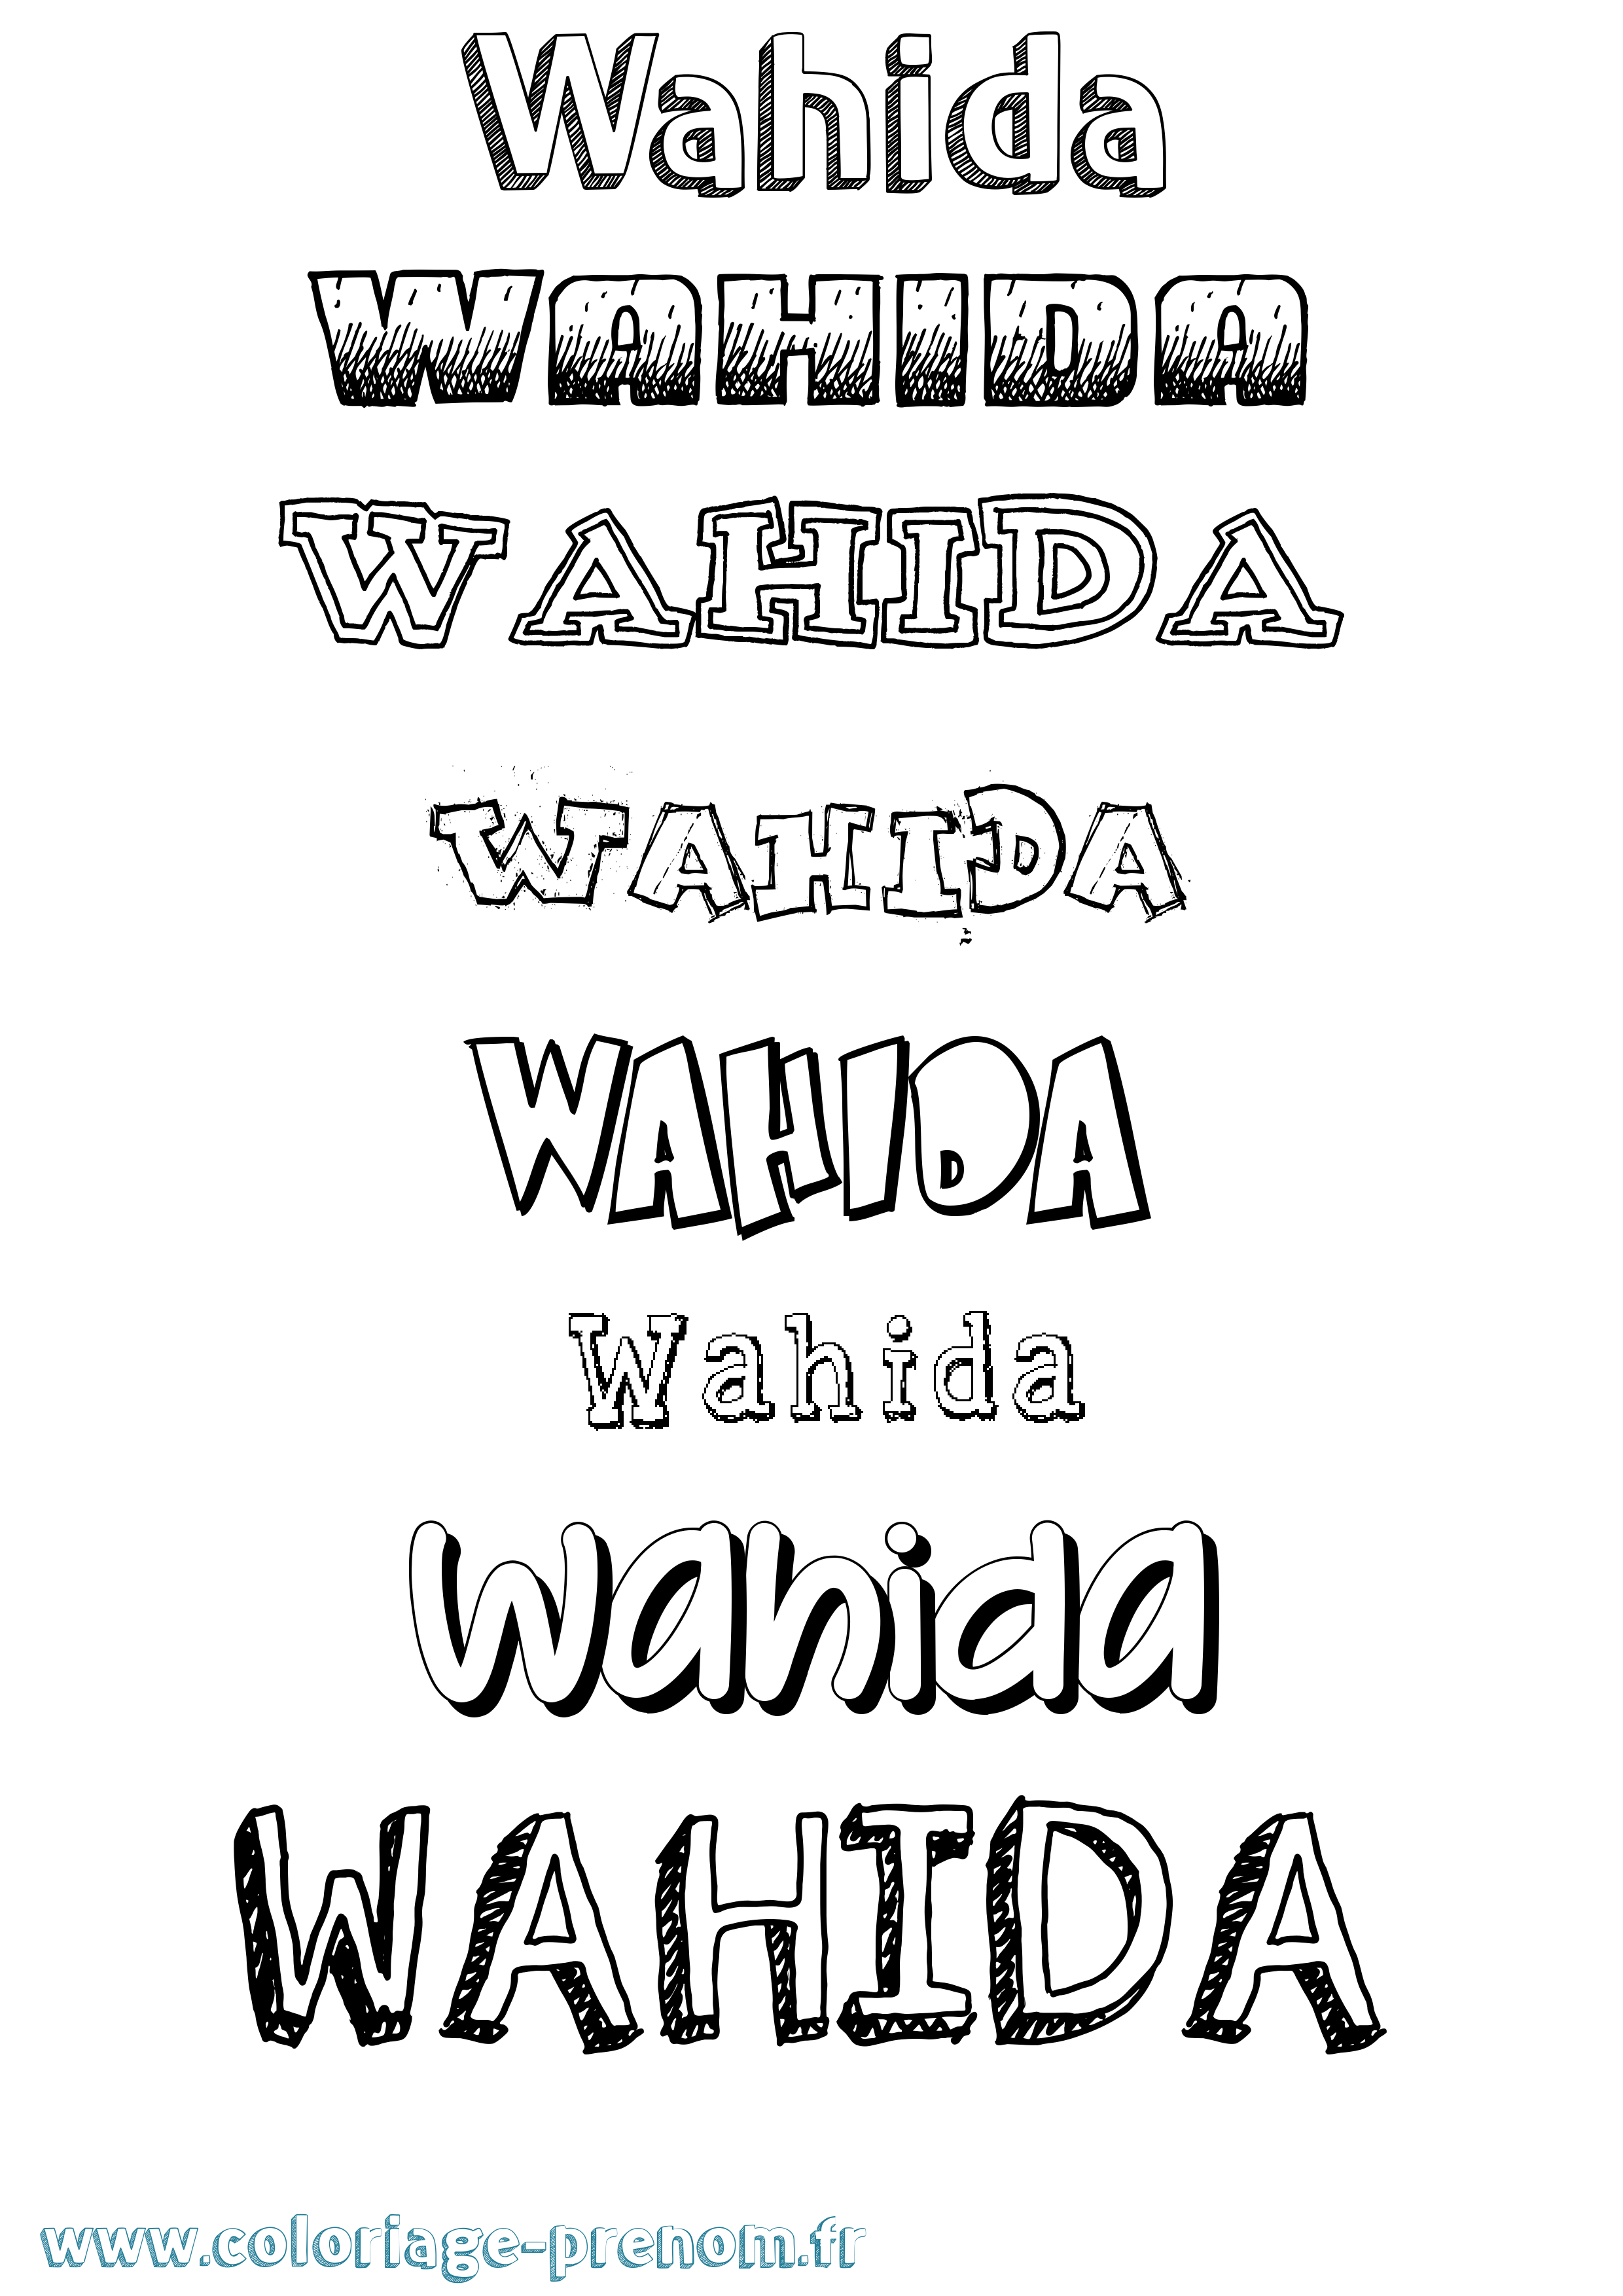 Coloriage prénom Wahida Dessiné